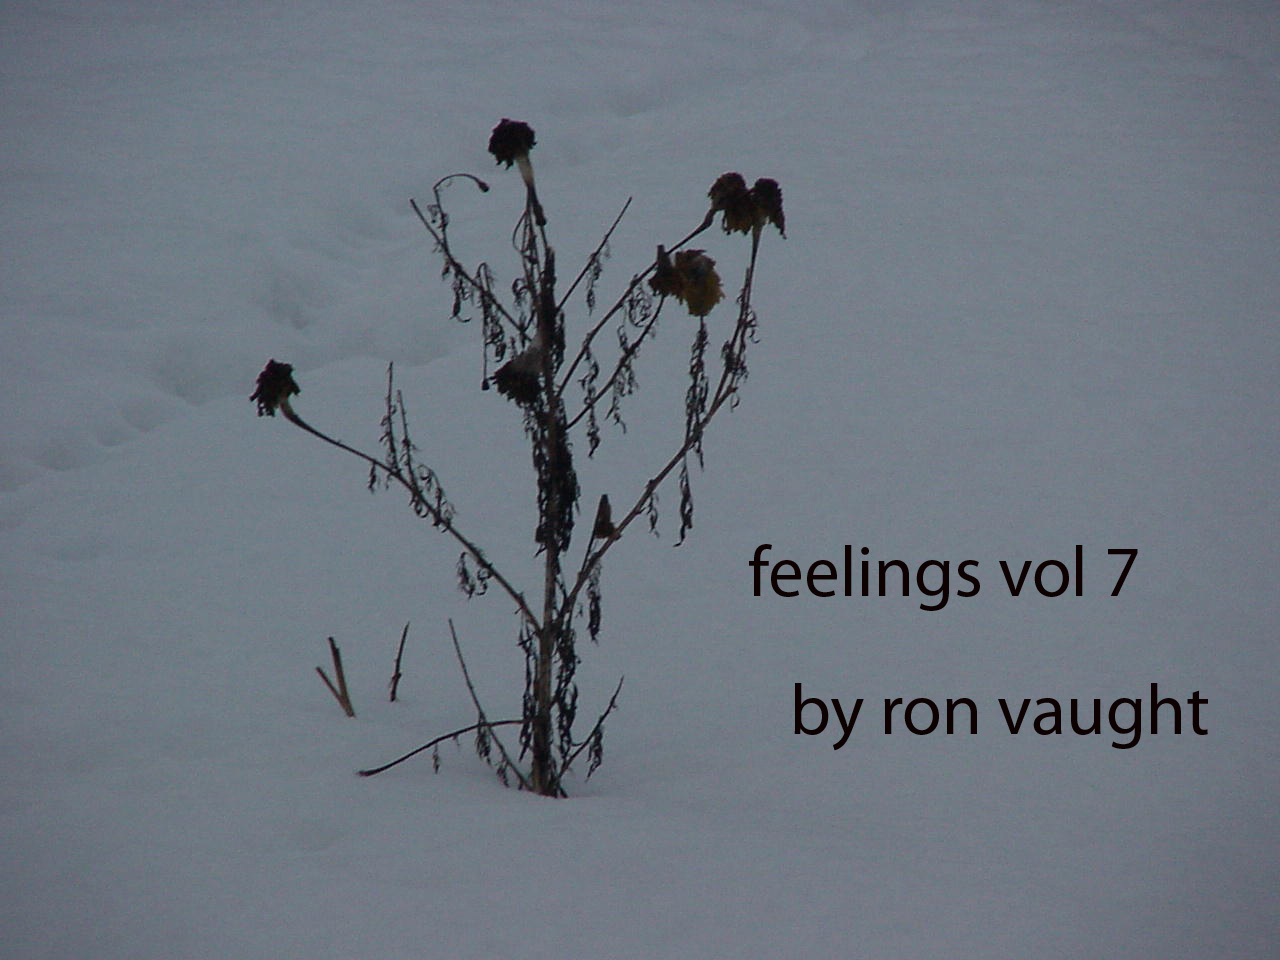 Feelings, vol 7